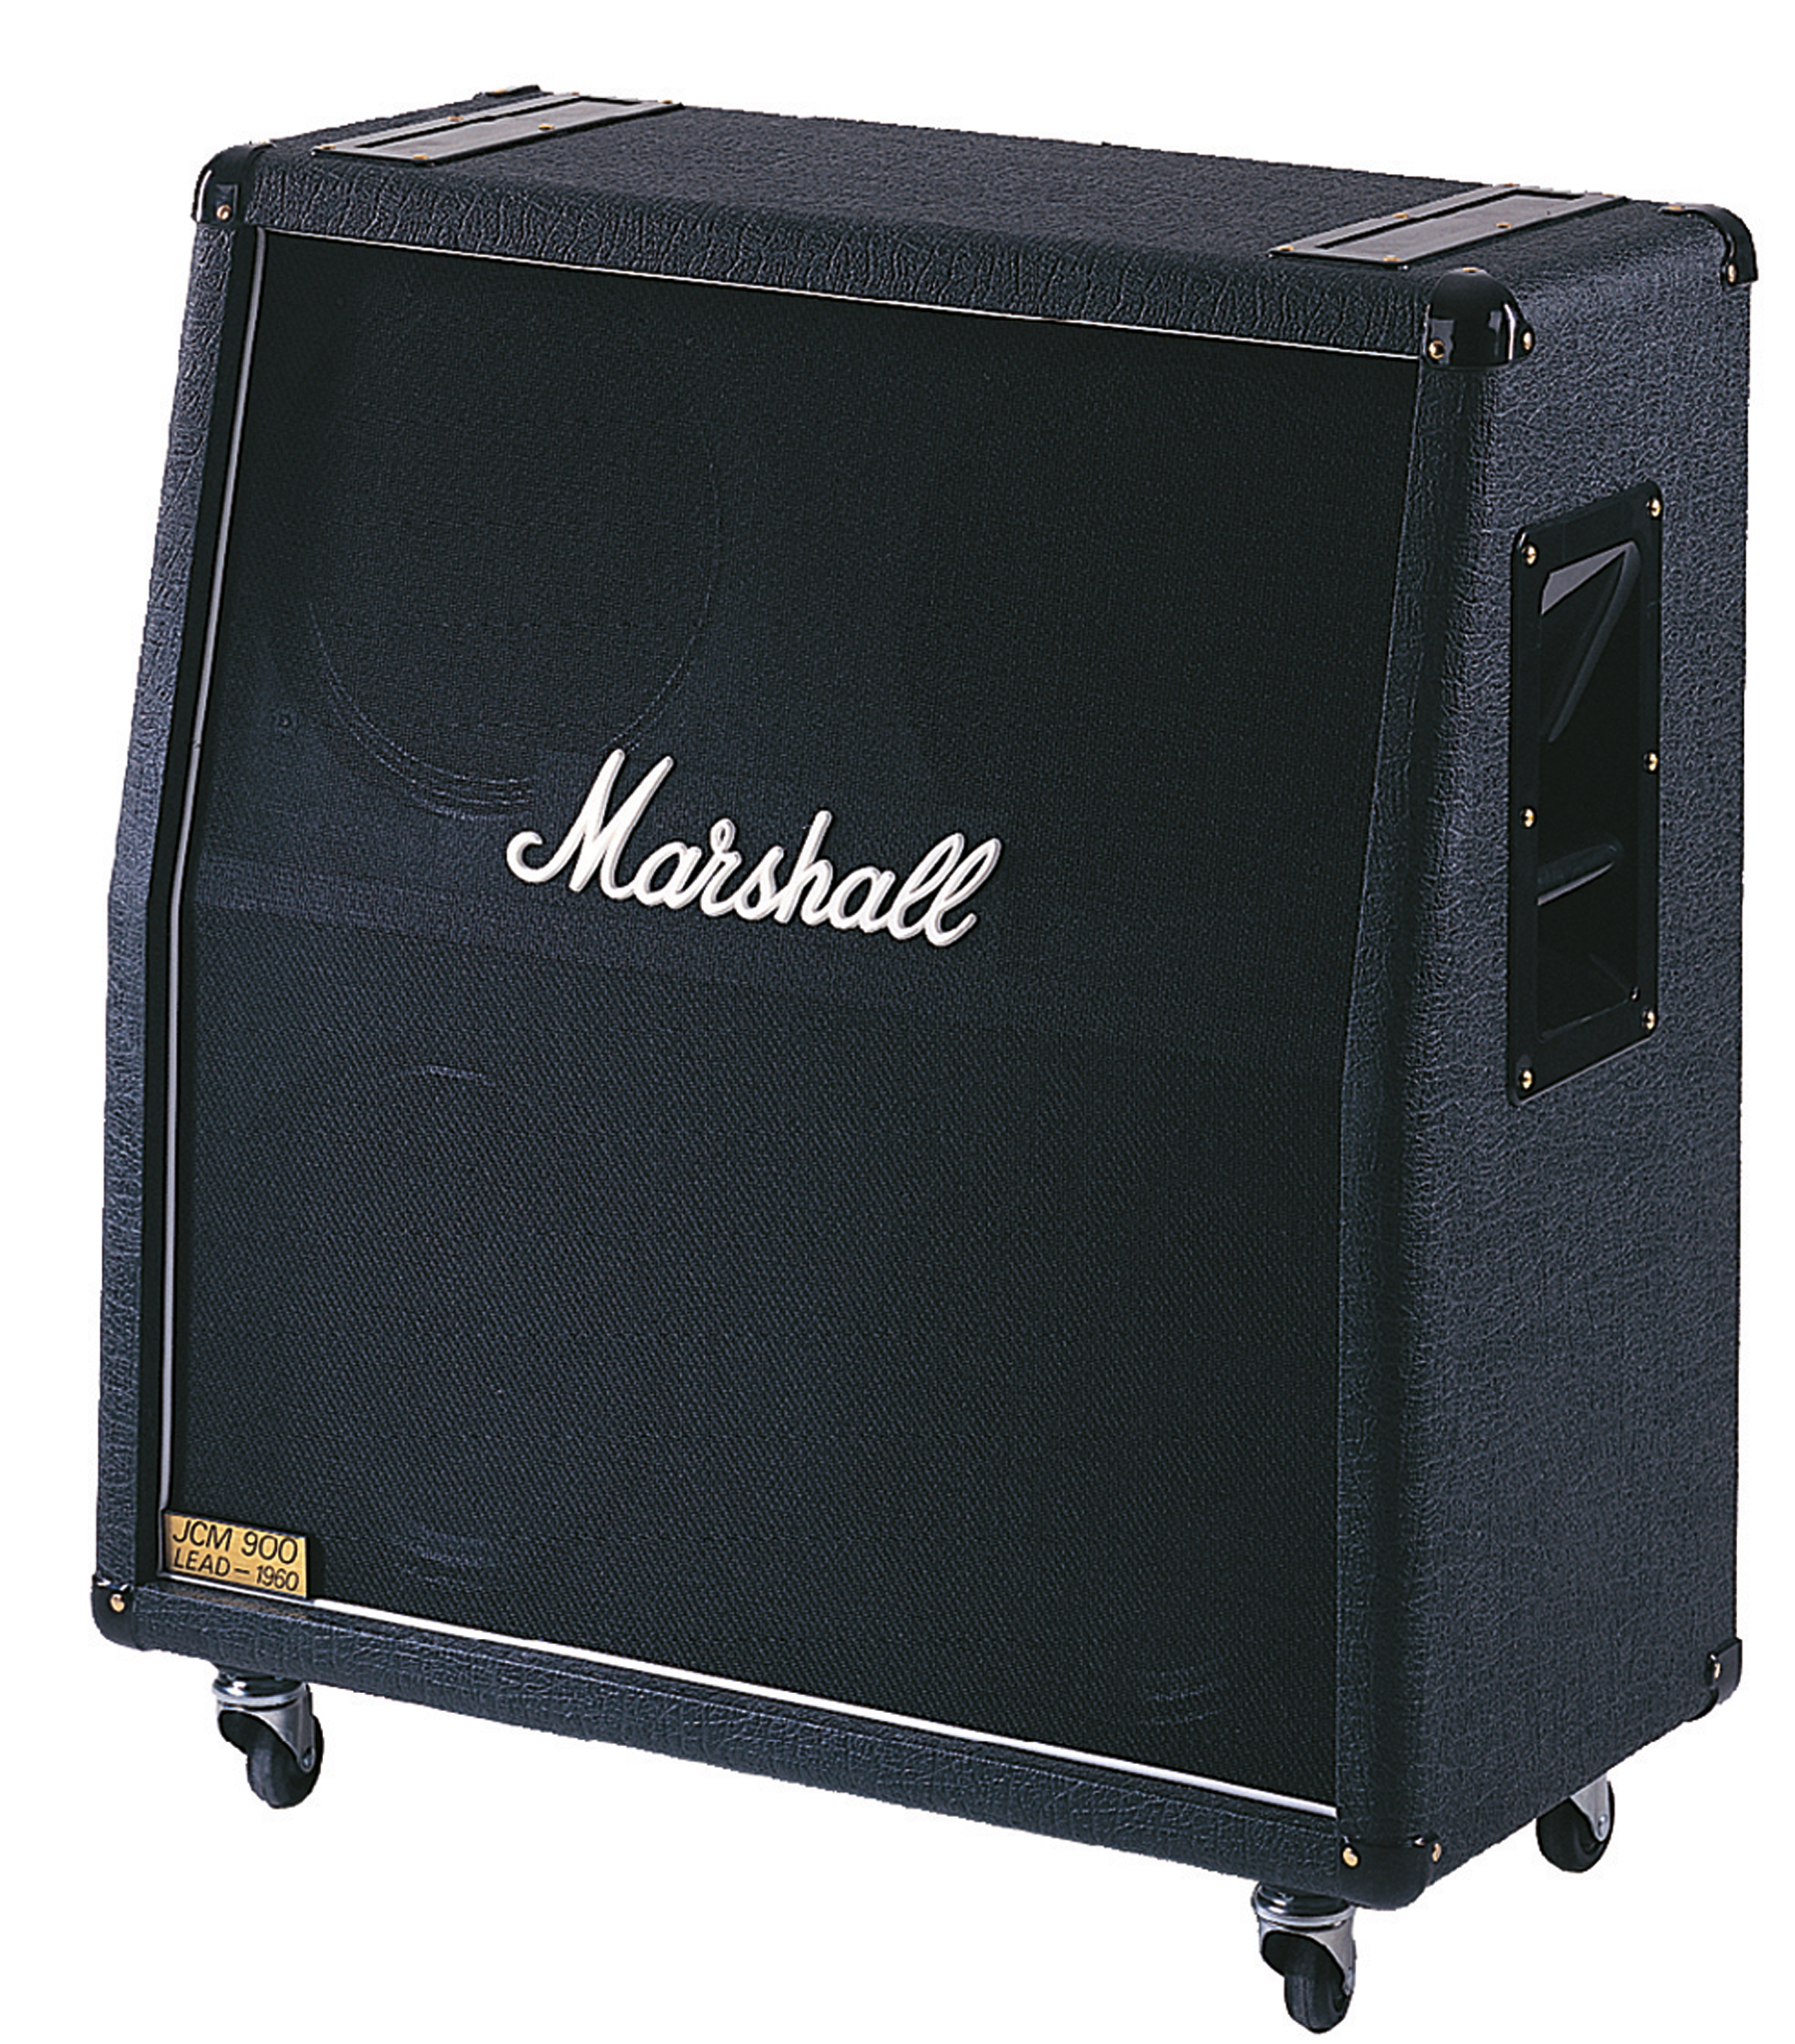 Marshall 1960A 300 Watt 4x12" Angled